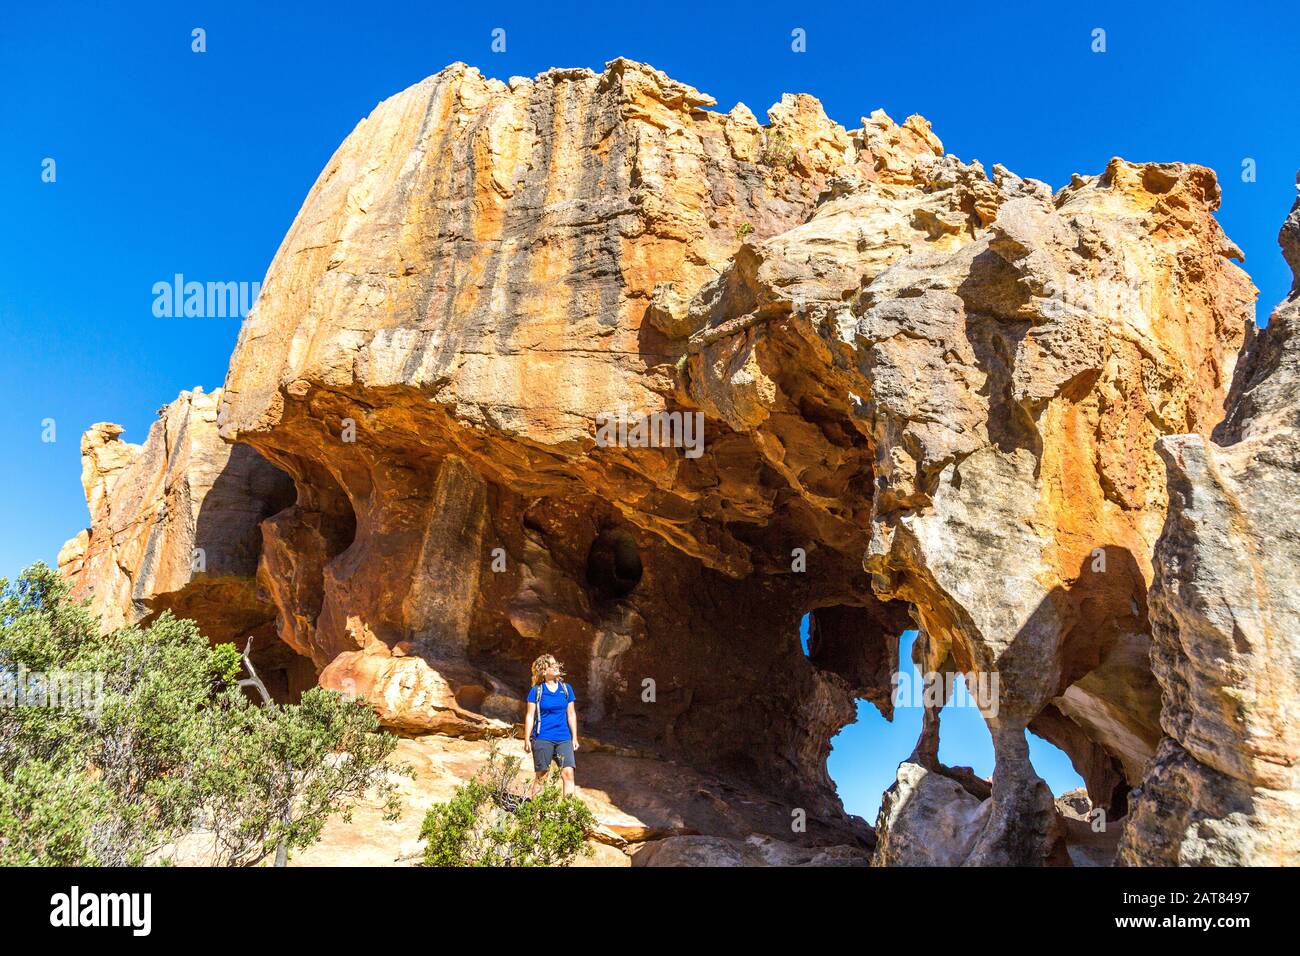 Jeune femme regardant une spectaculaire formation de roches avec arche et grotte, Stadsaal, Cederberg Wilderness Area, Afrique du Sud Banque D'Images